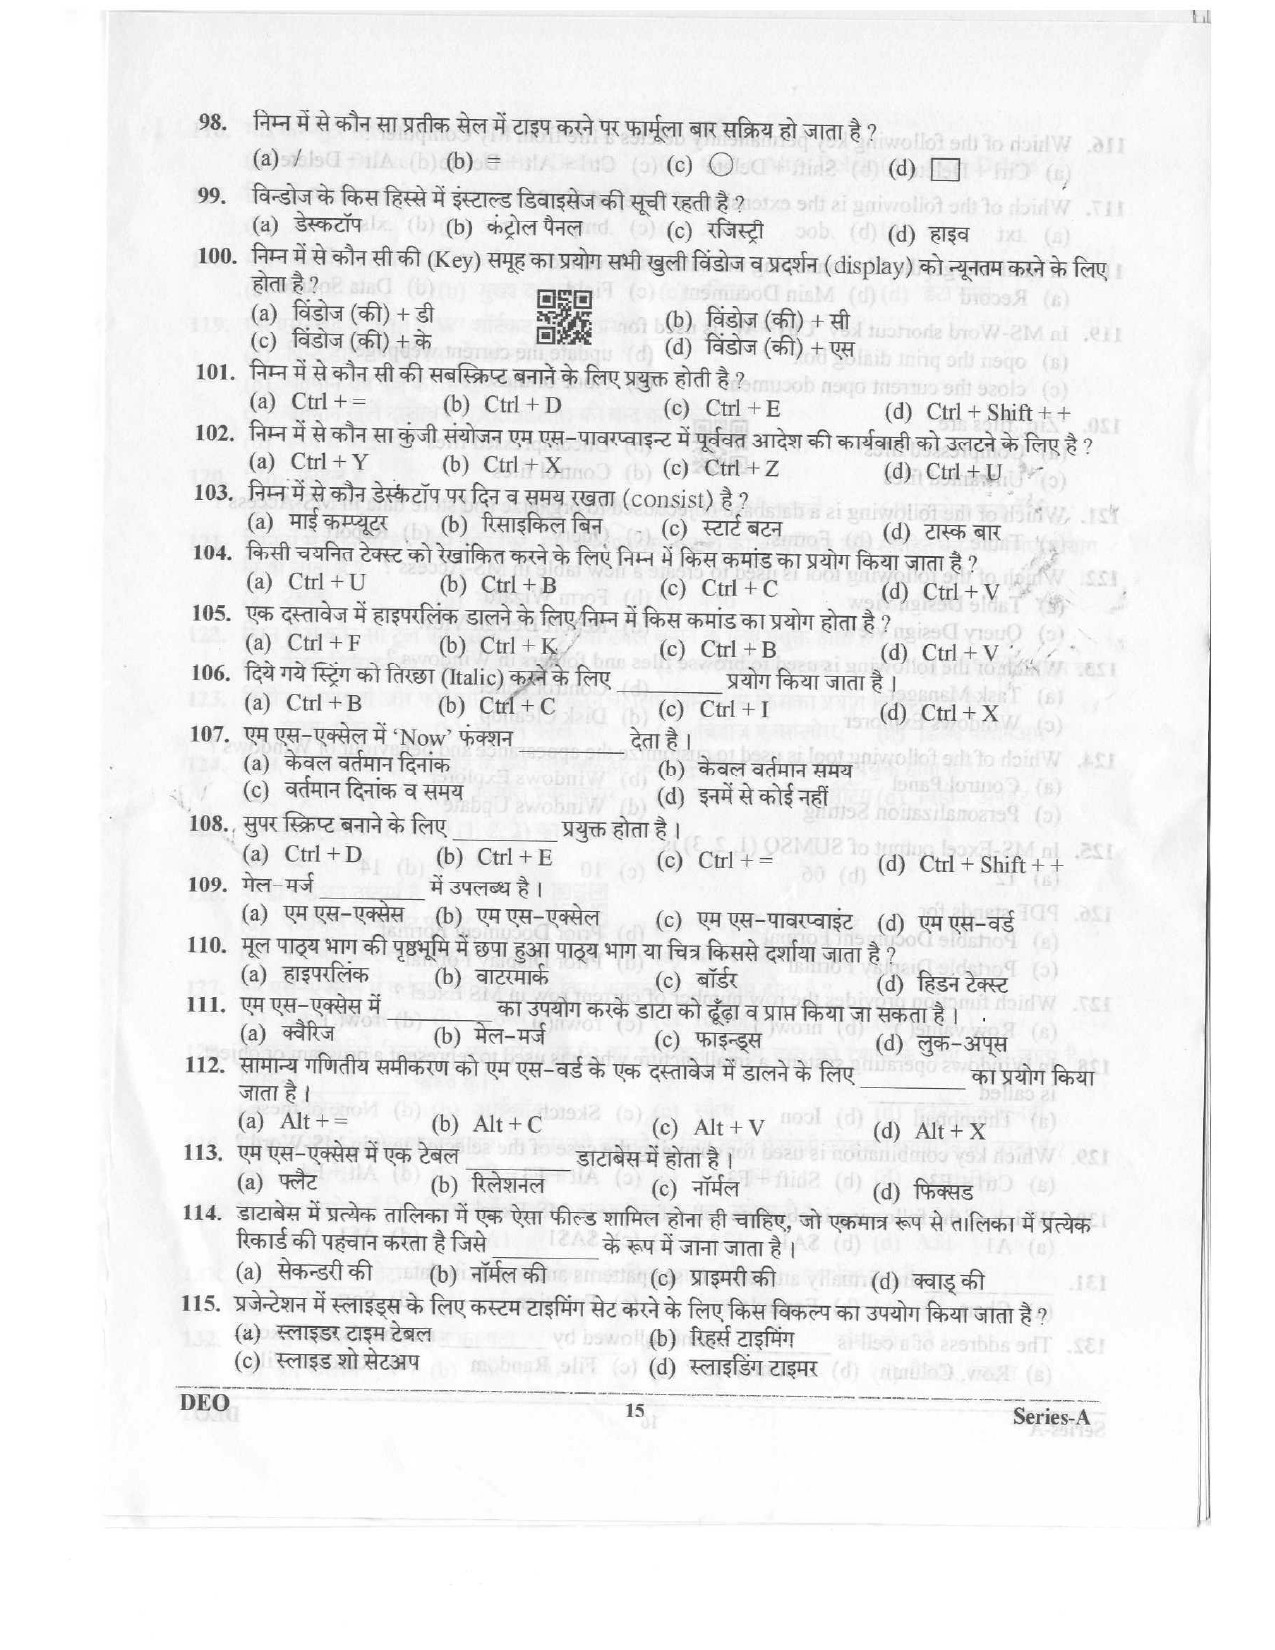 Data Entry Operator Uttarakhand Public Service Commission Exam 2023 14